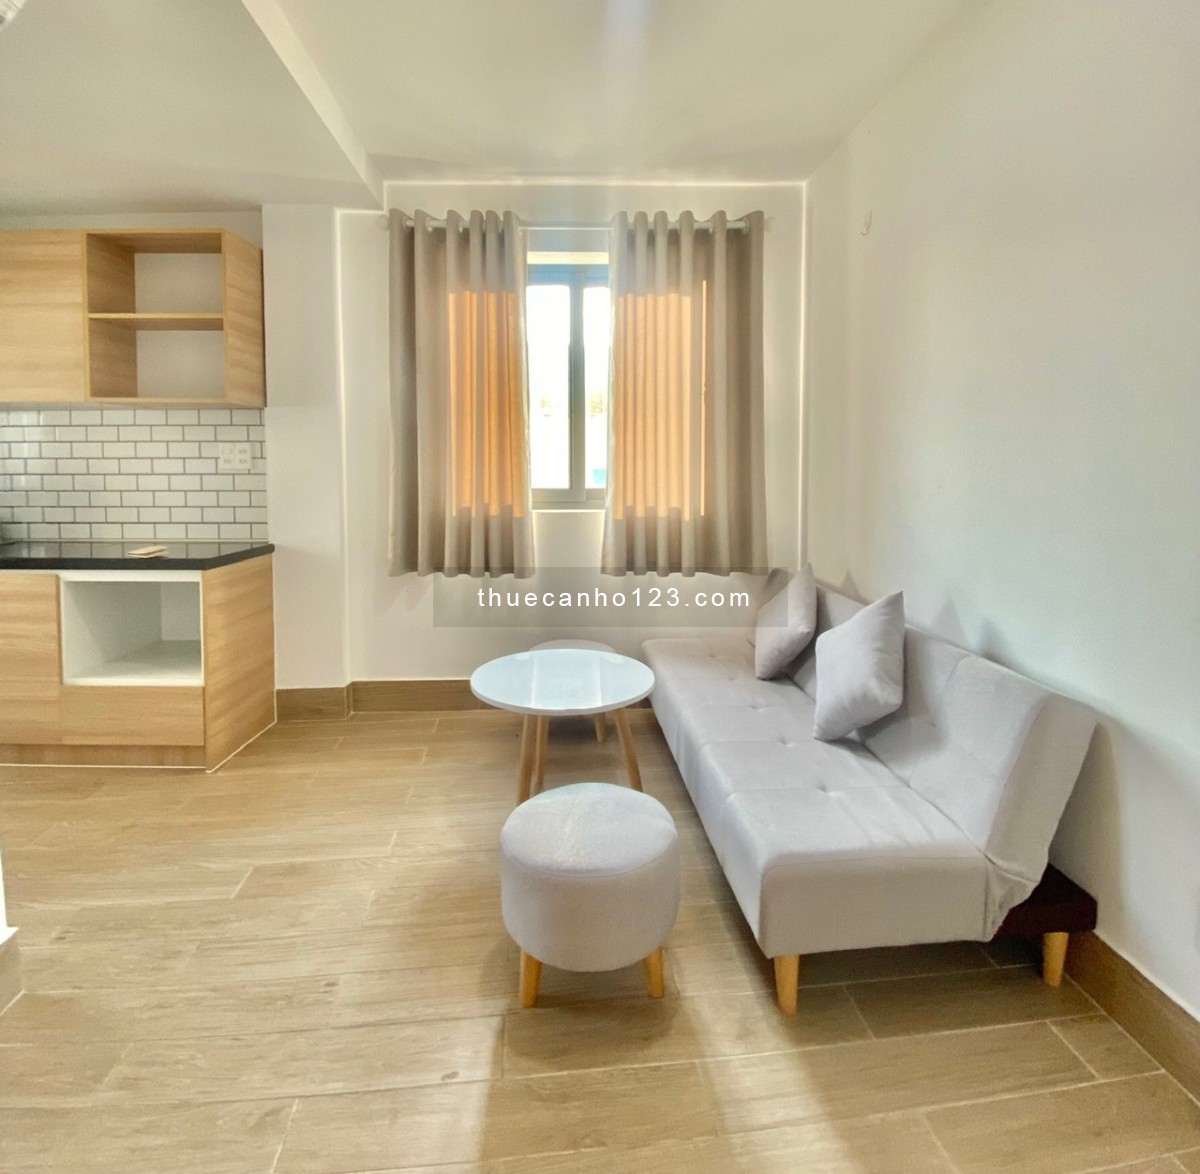 Căn hộ cho thuê tại quận 7 dạng 1 phòng ngủ riêng gần Lotte, giá 8 triệu